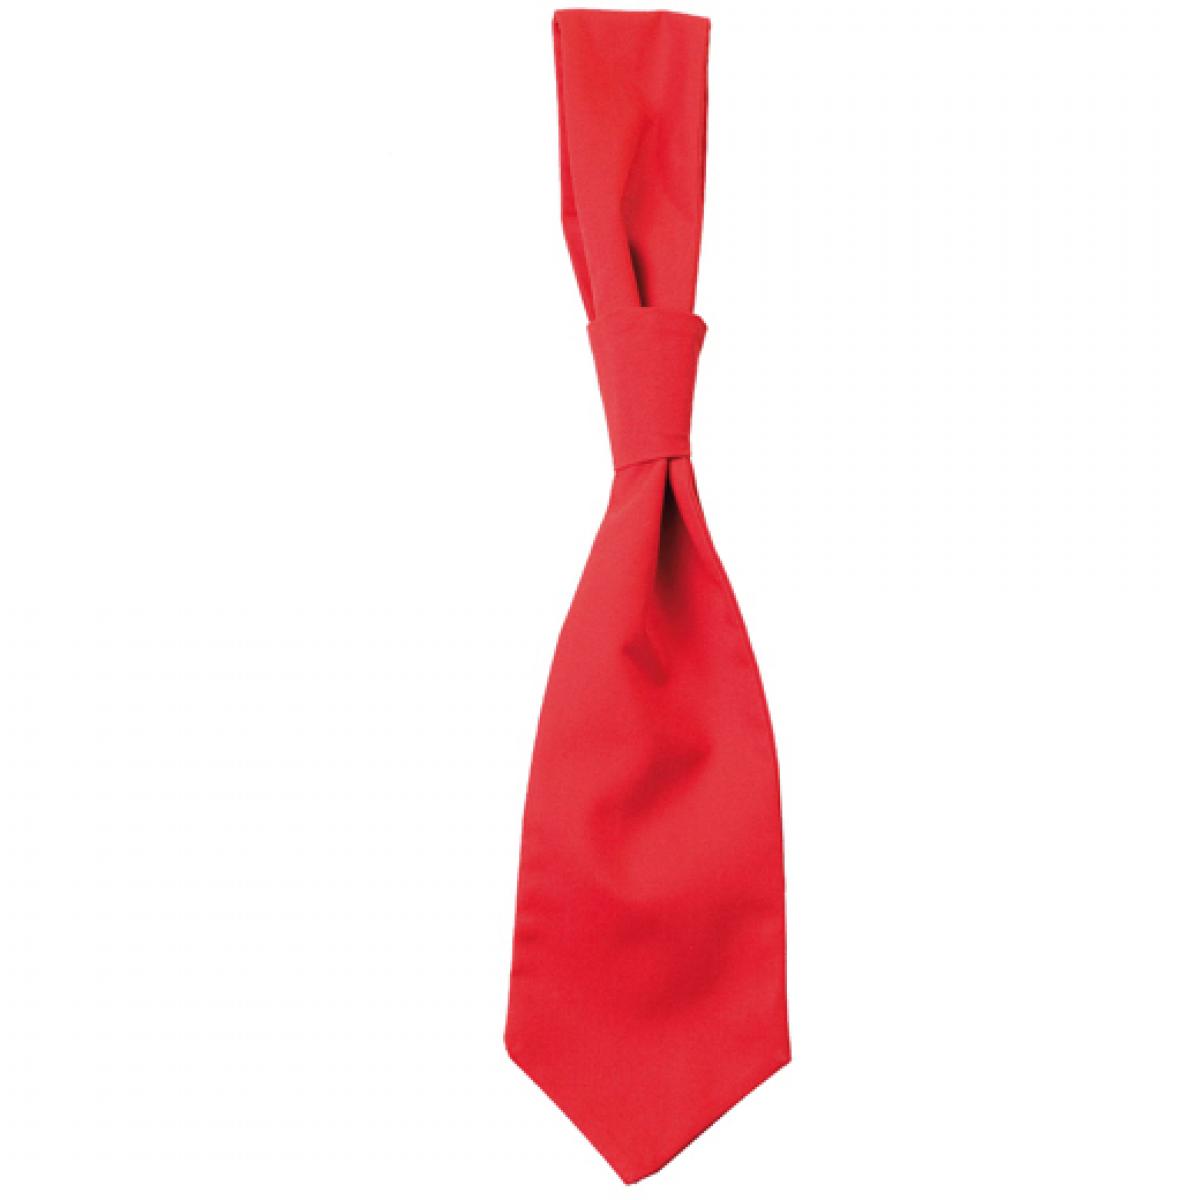 Hersteller: CG Workwear Herstellernummer: 01360-01 Artikelbezeichnung: Krawatte Messina / Zertifiziert nach Oeko-Tex 100 Farbe: Red